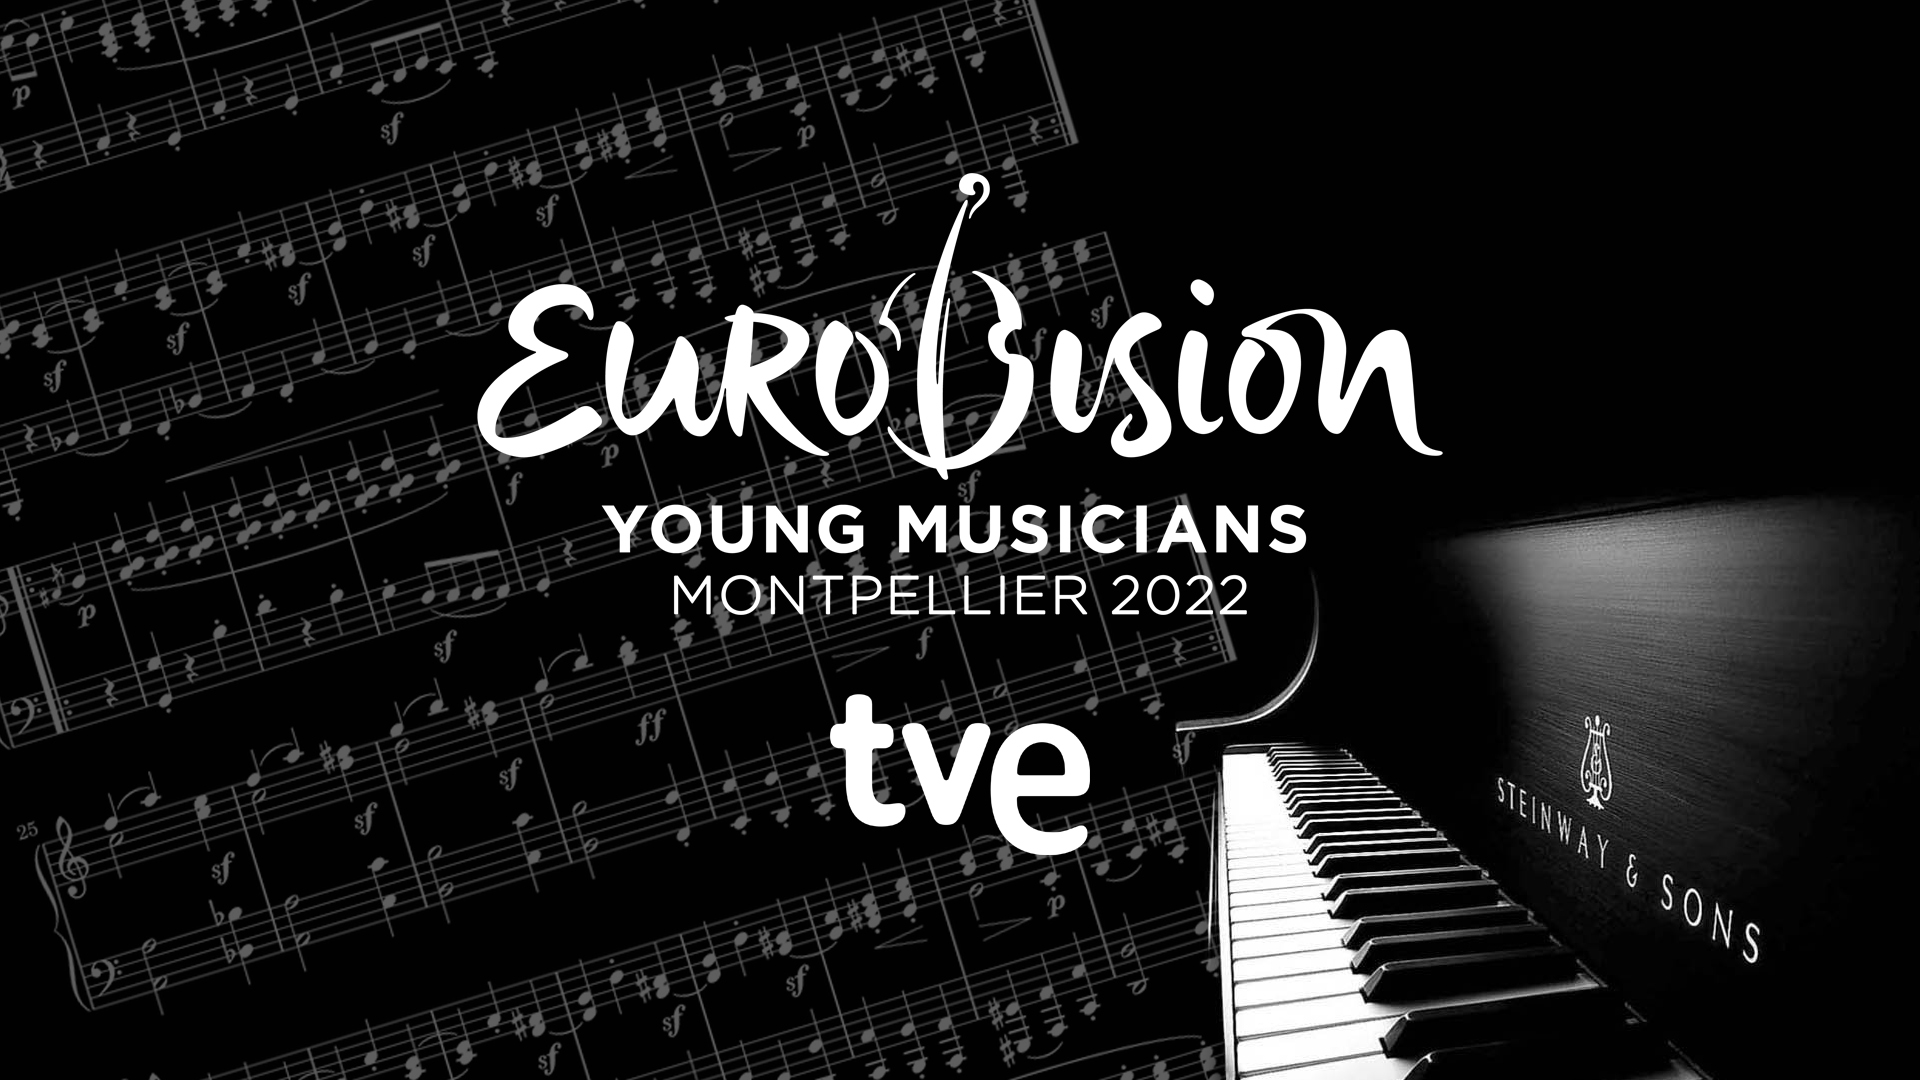 Exclusiva: RTVE explica las razones de su ausencia en el Festival de Eurovisión de Jóvenes Músicos 2022